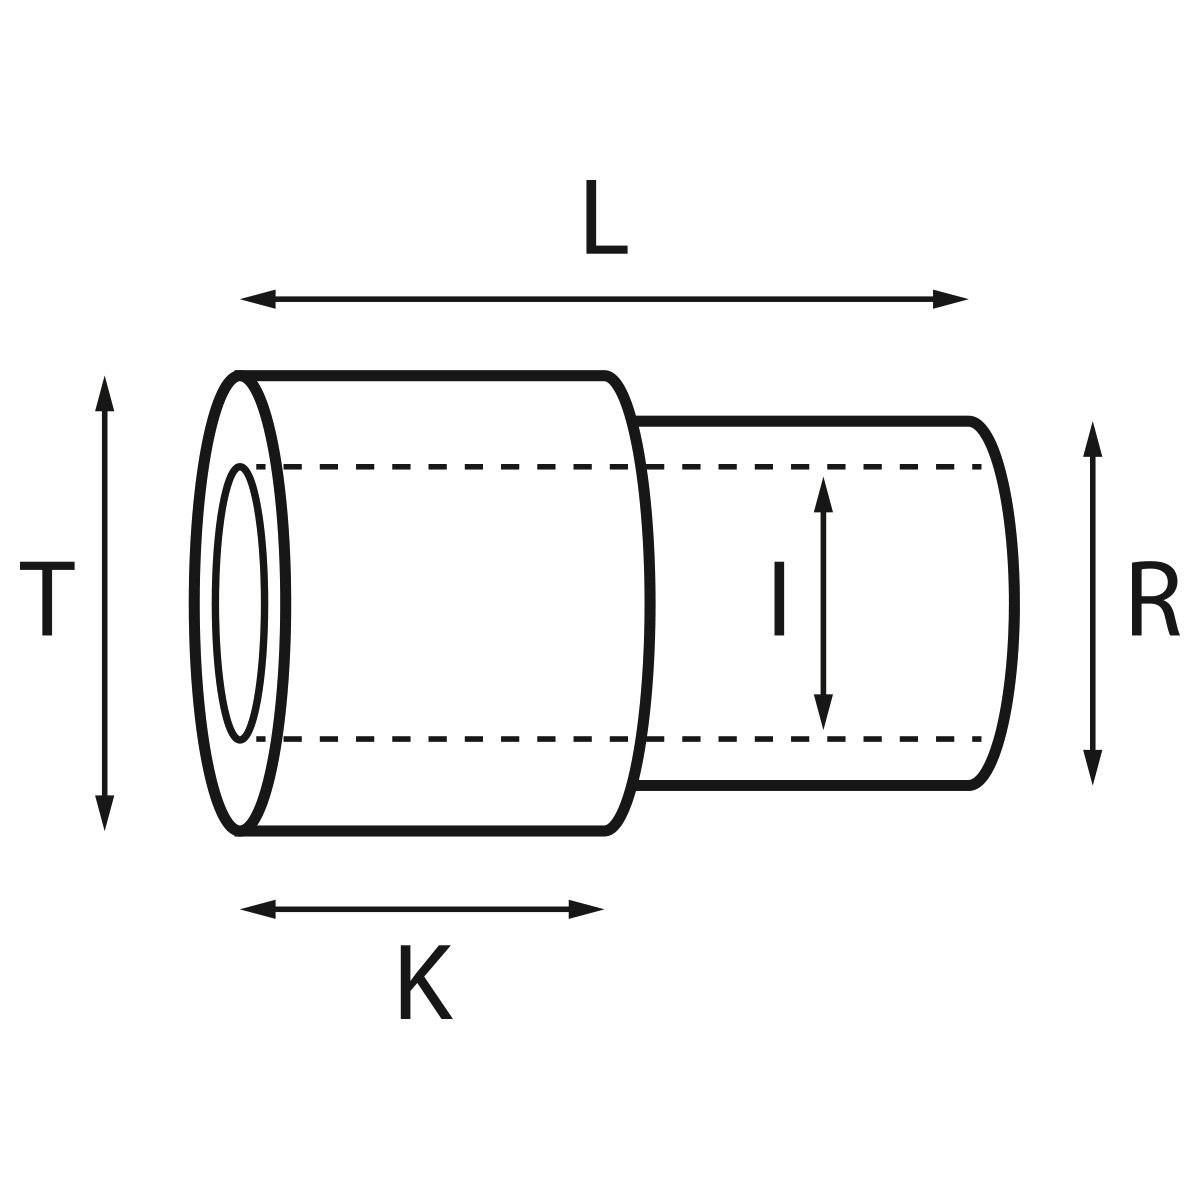 Gehäusetube Typ AS 13826, Tubus Ø 2 mm, Gesamtlänge 3 mm, für wasserdichte Kronen